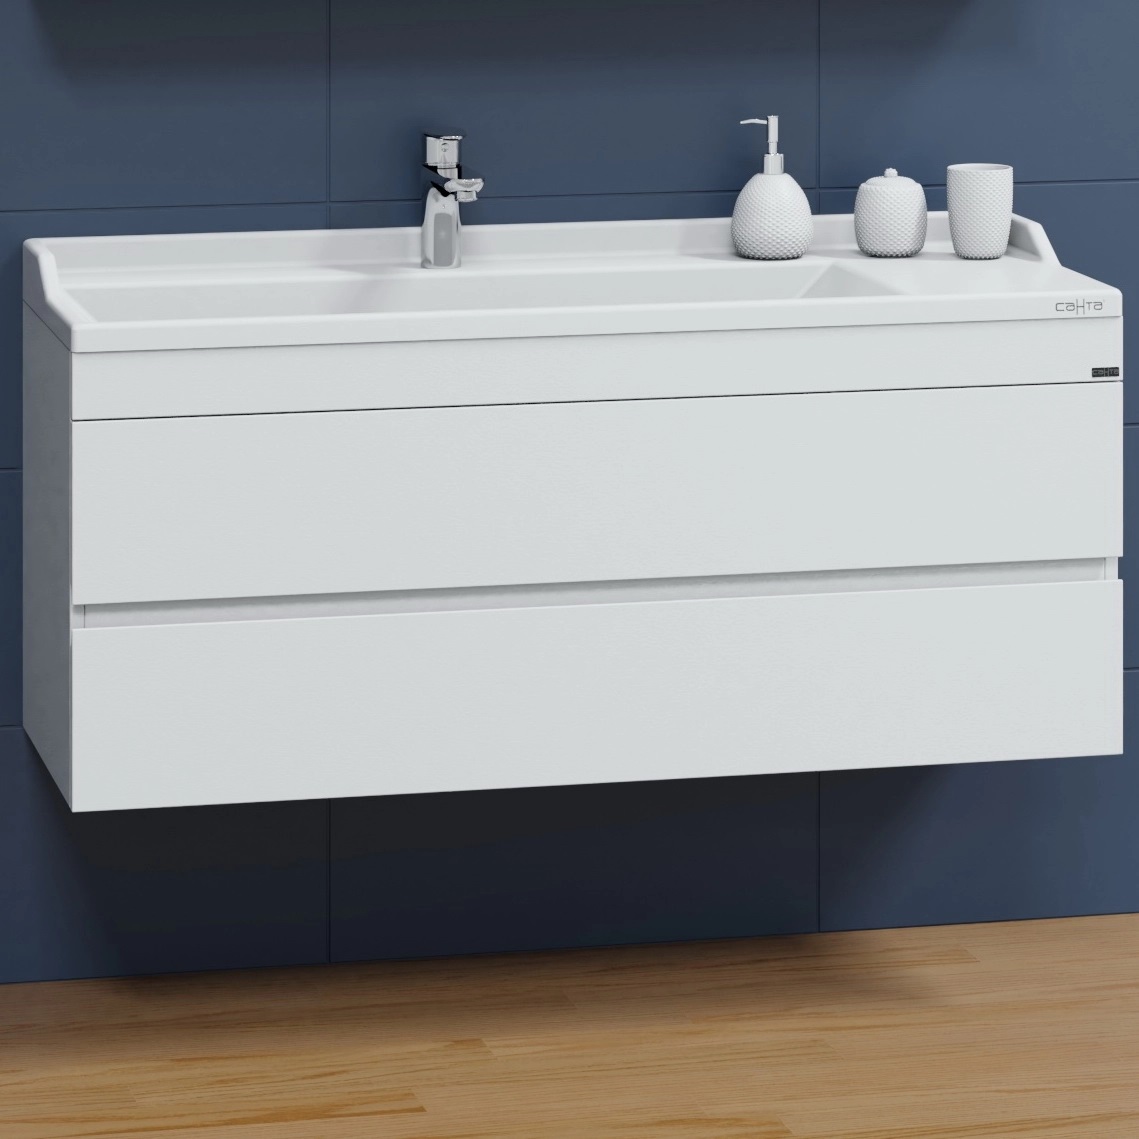 Мебель для ванной Санта Марс 120 см подвесная, белый